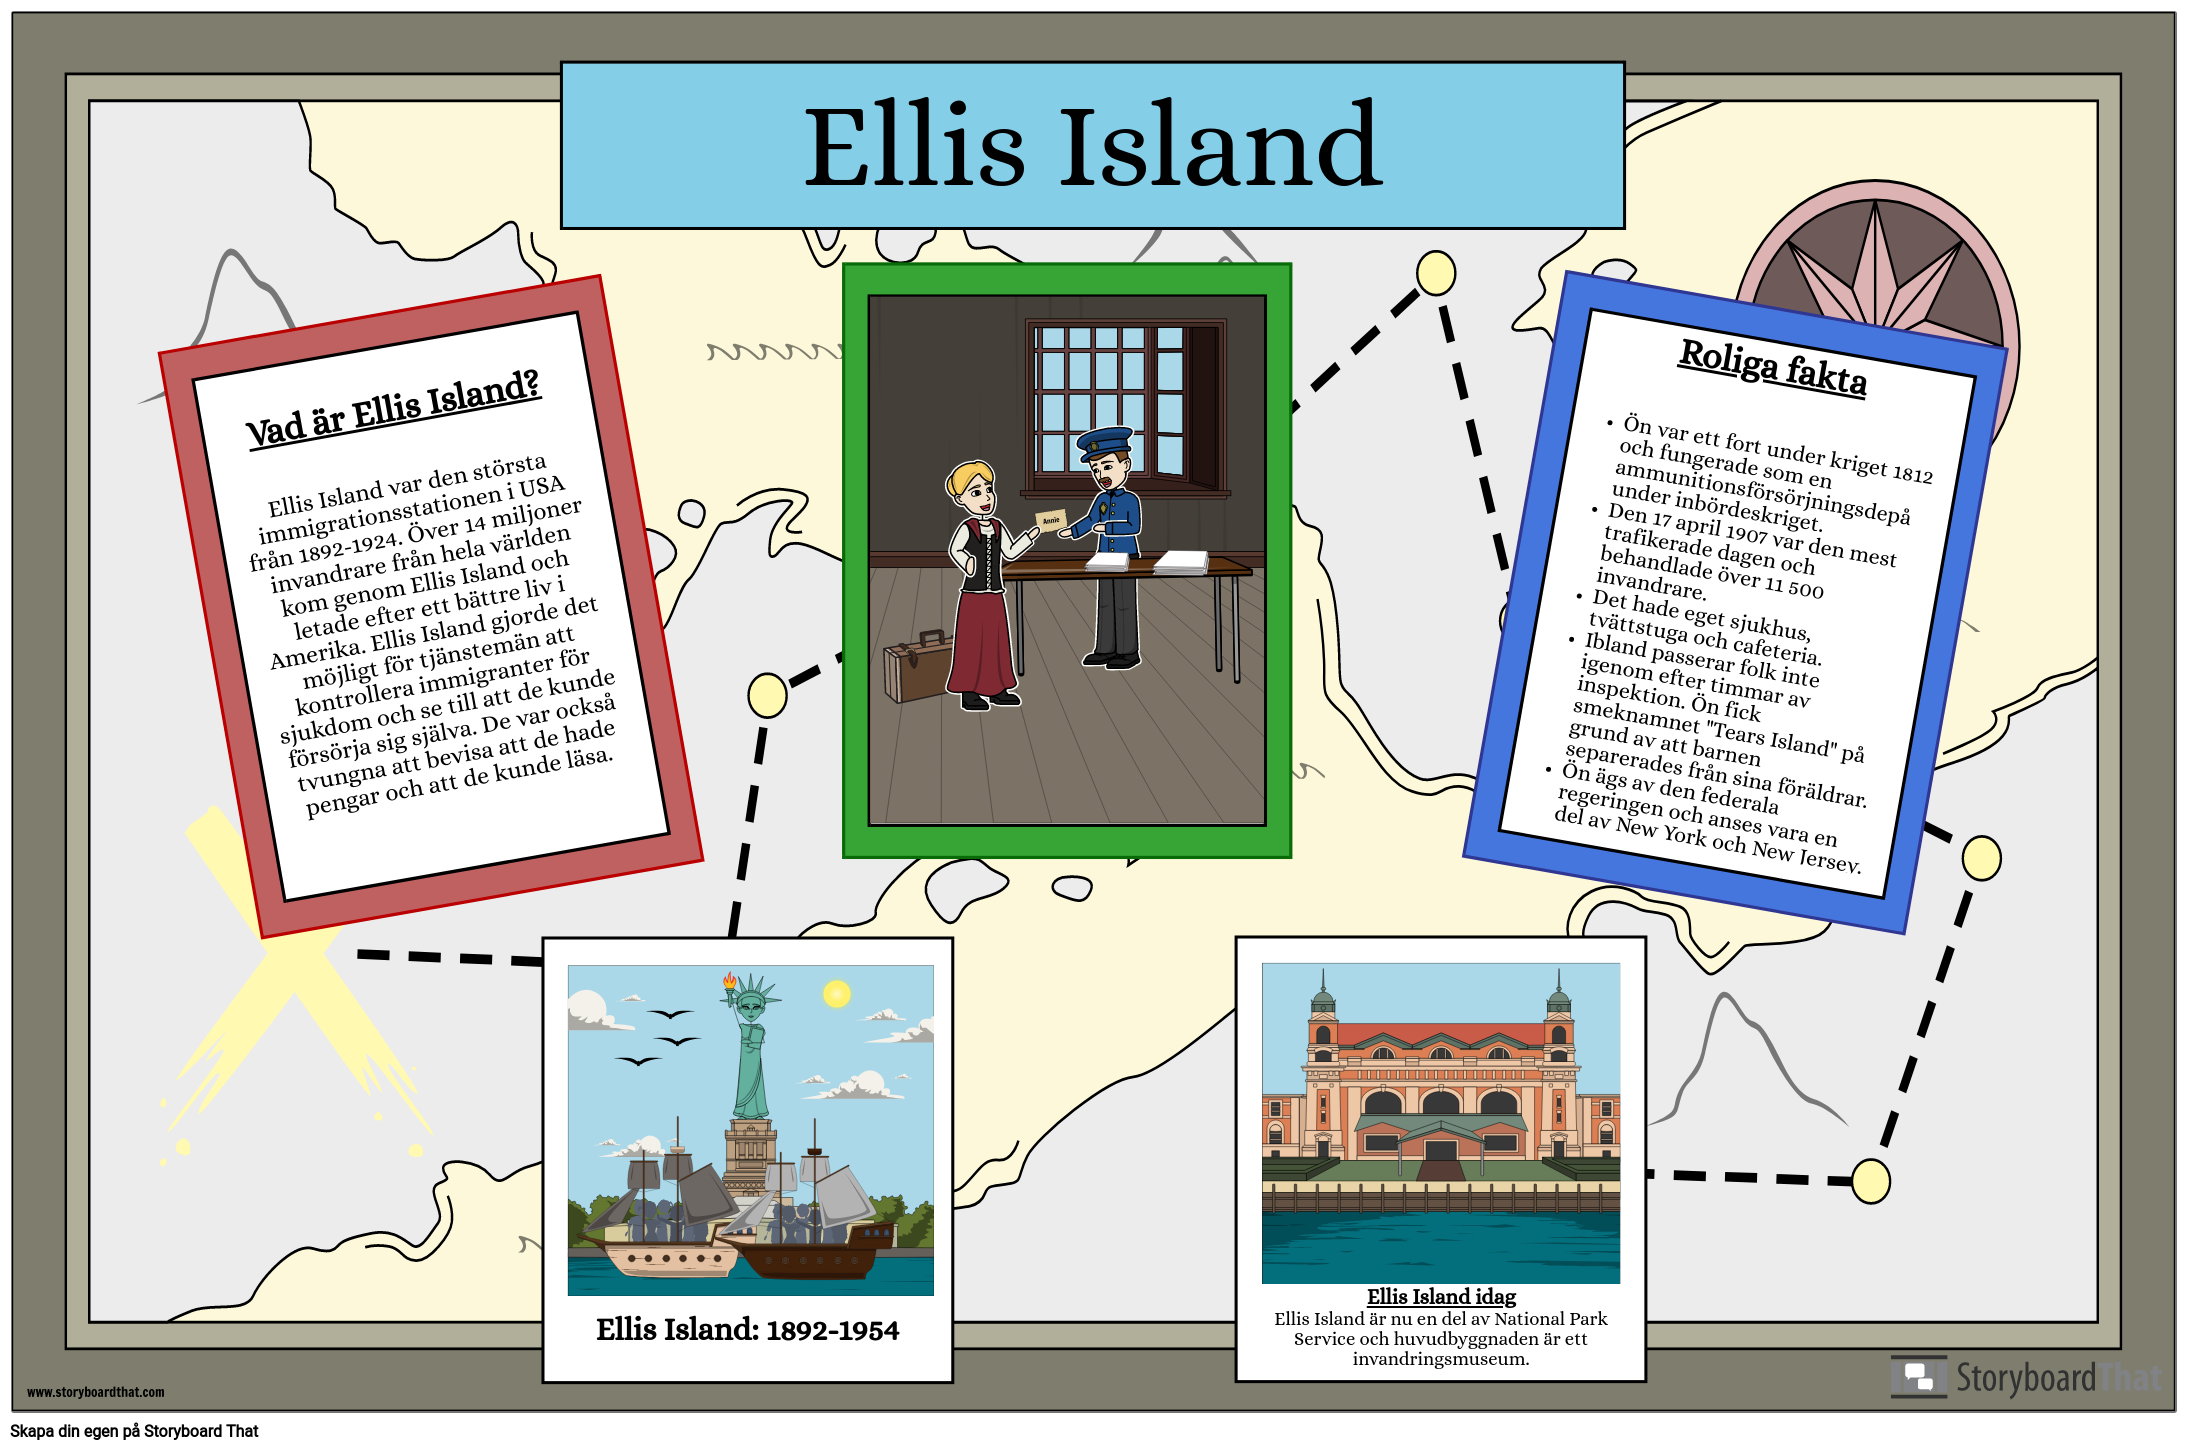 Vad är Ellis Island?